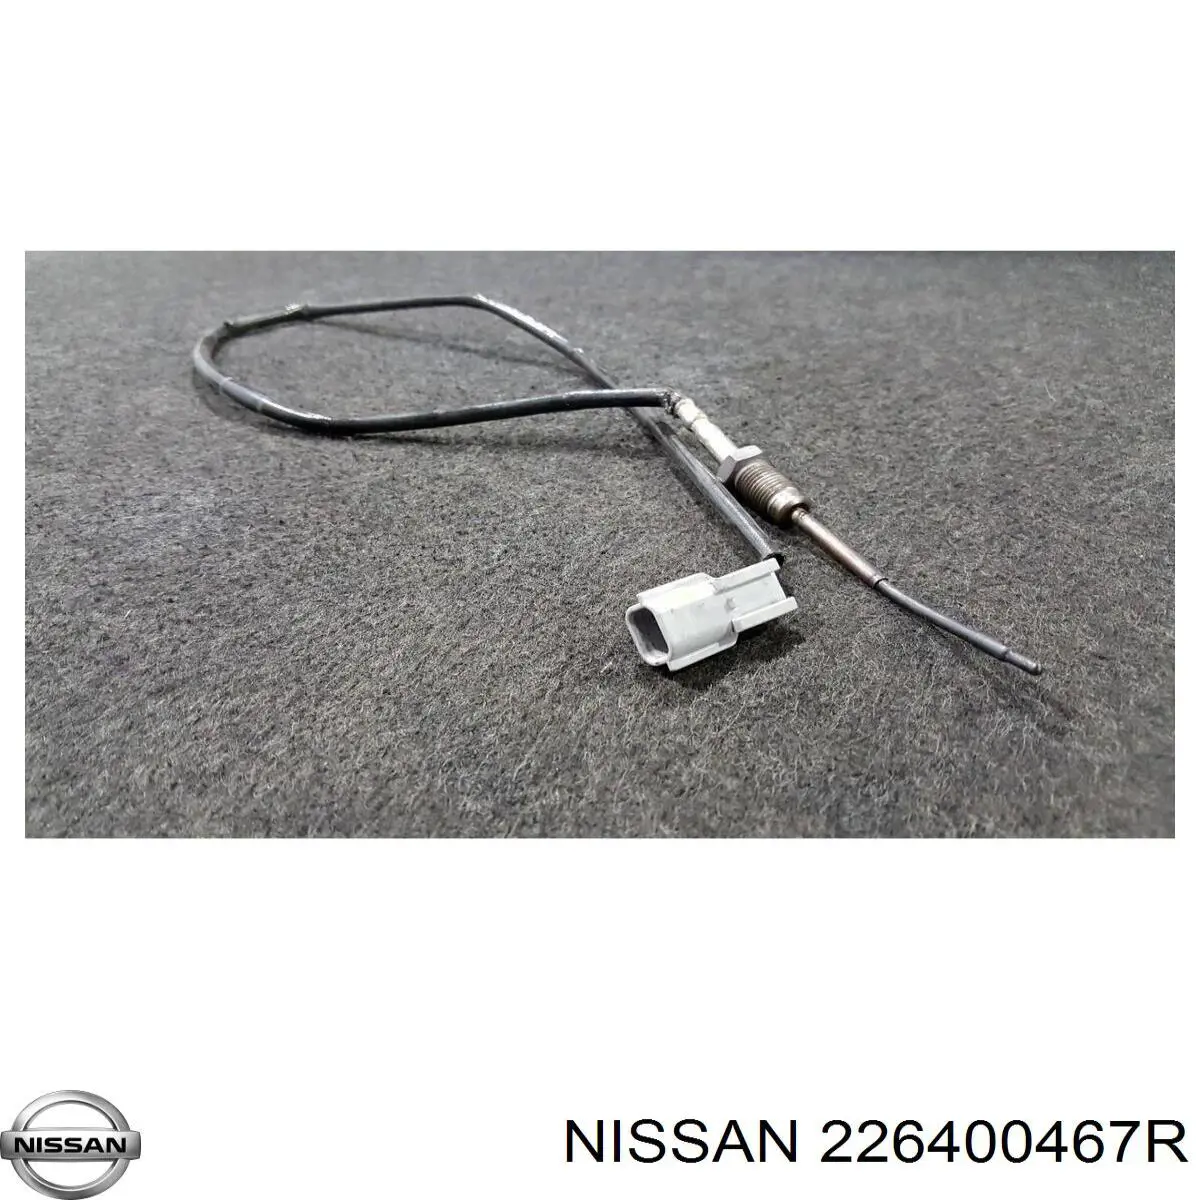 Sensor de temperatura, gas de escape, Filtro hollín/partículas para Nissan Qashqai (J10)